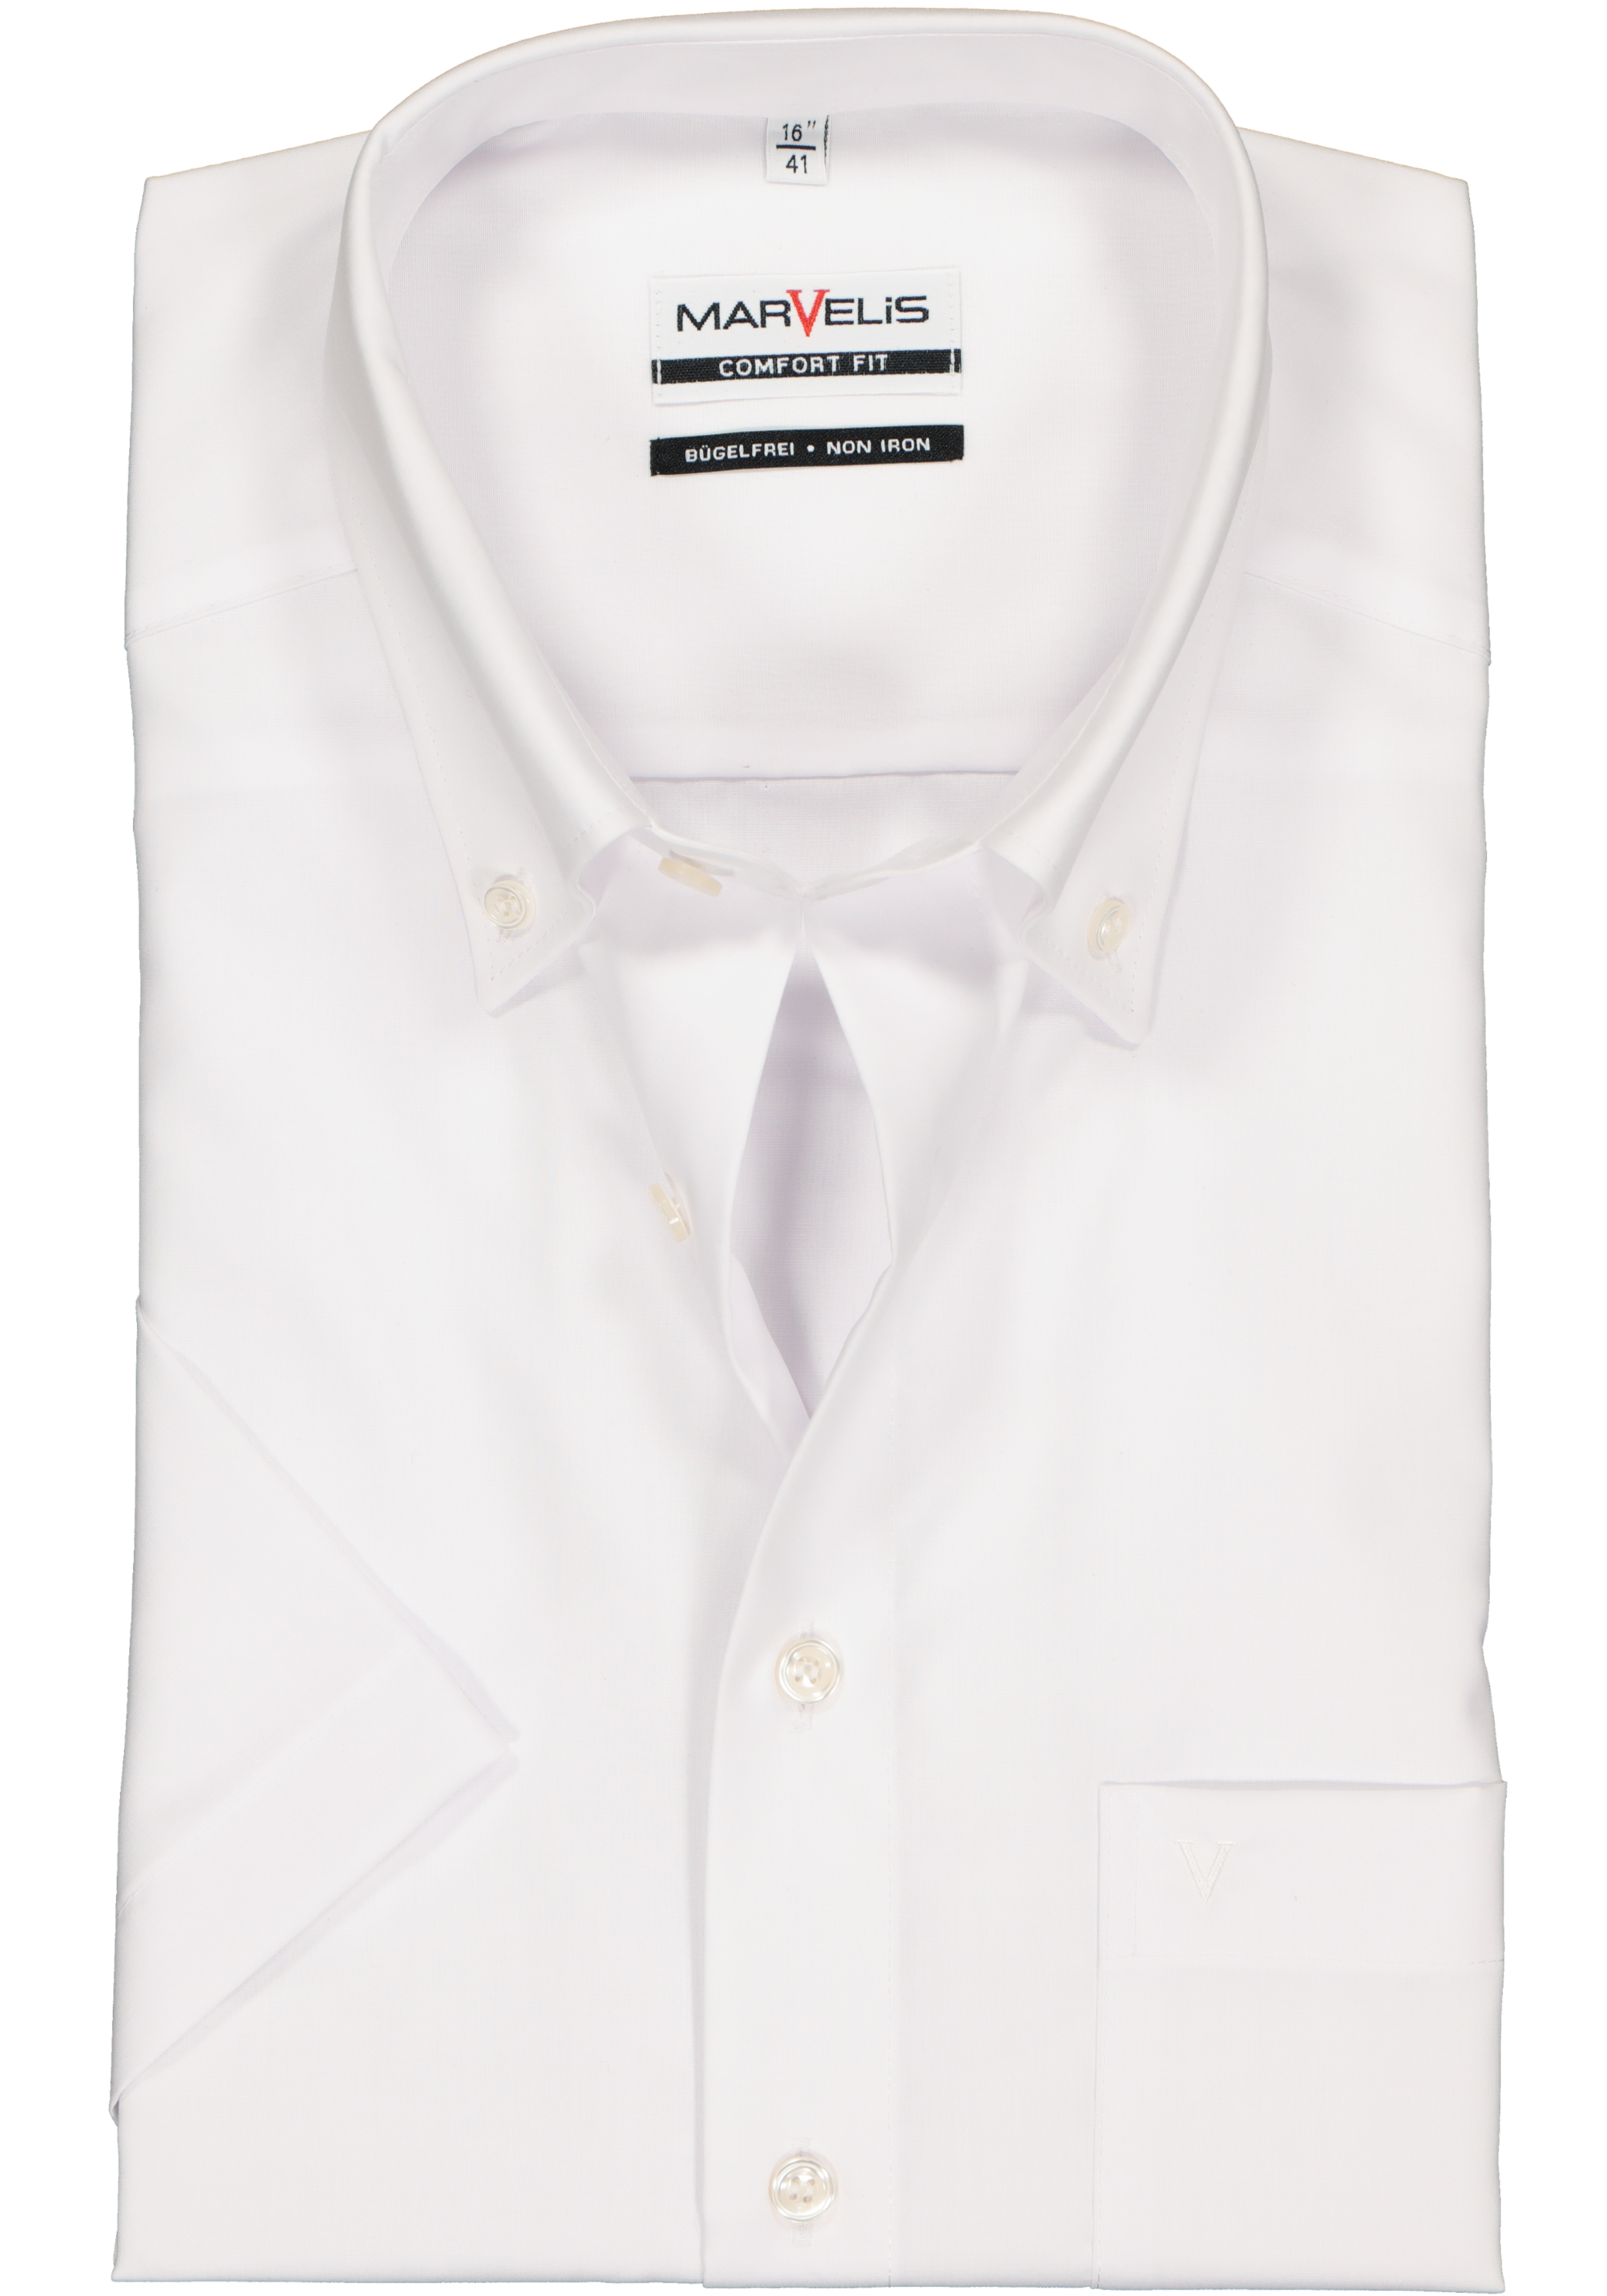 MARVELIS comfort fit overhemd, korte mouw, wit met button-down kraag